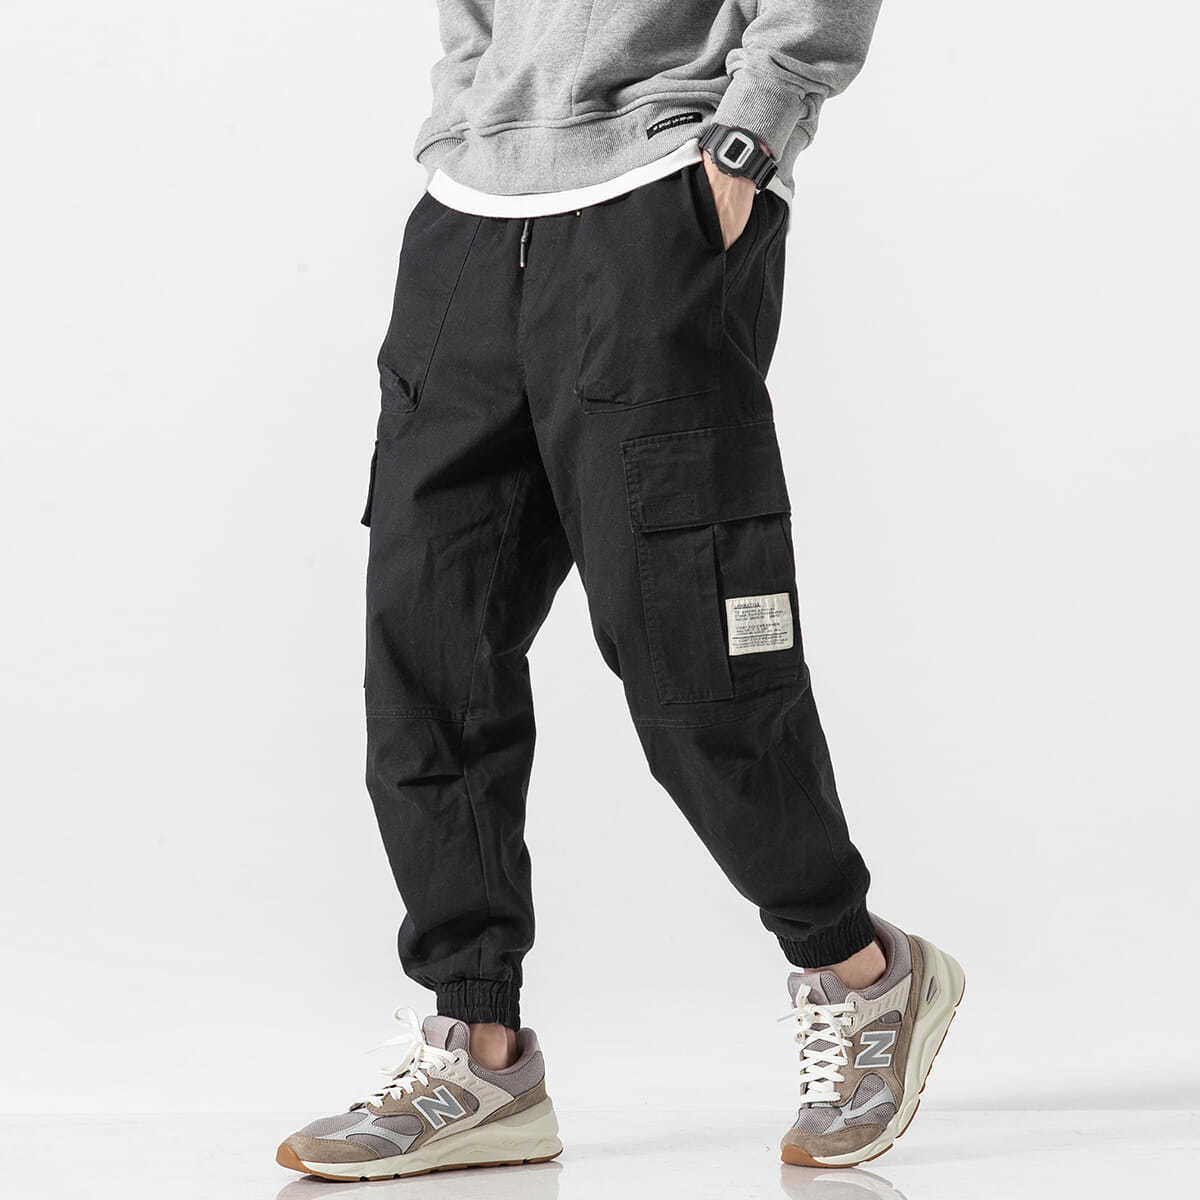 XGI 冬季大口袋贴标长裤男生2021美式潮牌宽松休闲加绒束脚工装裤